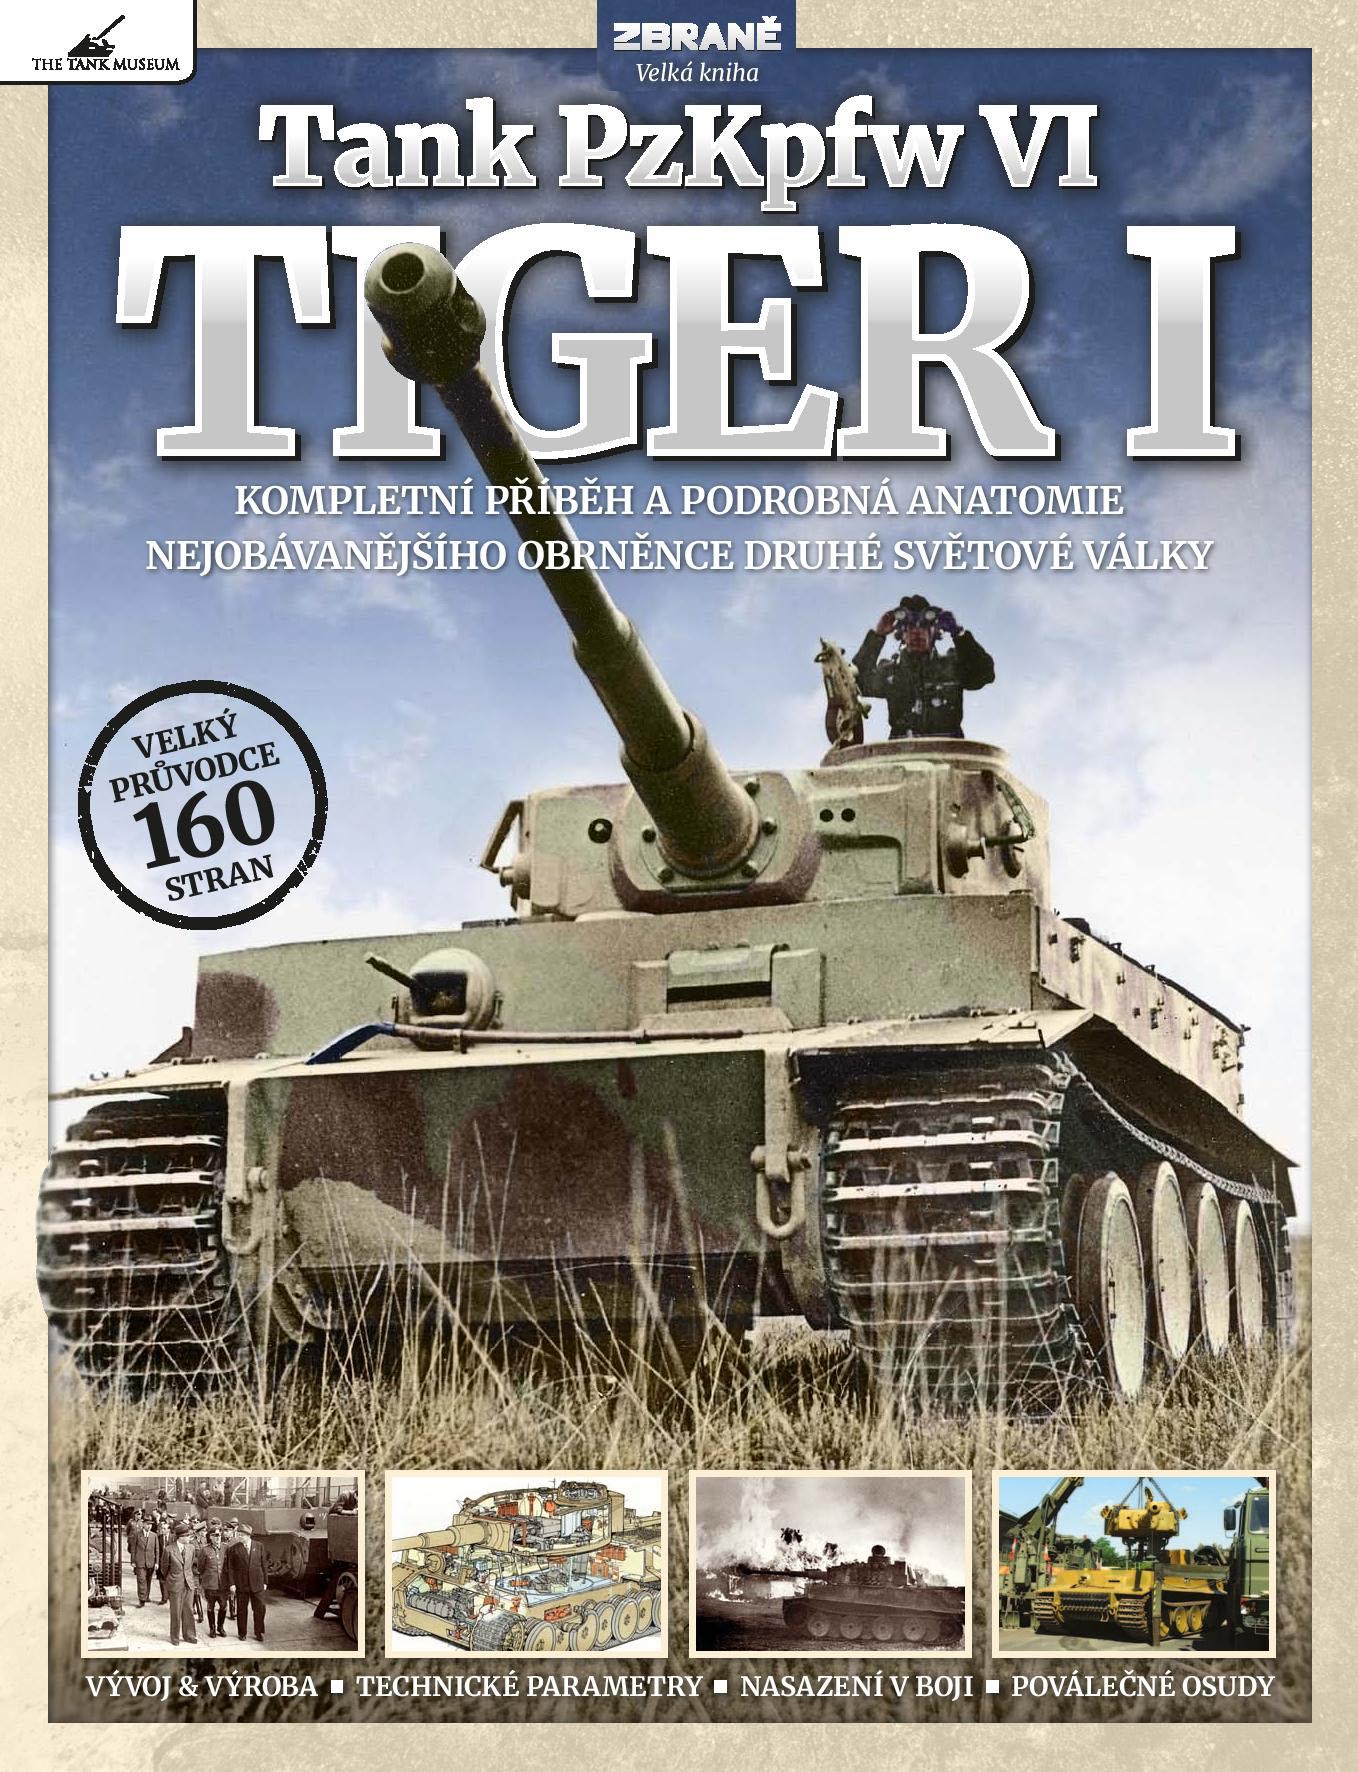 Tank PzKpfw VI – TIGER I